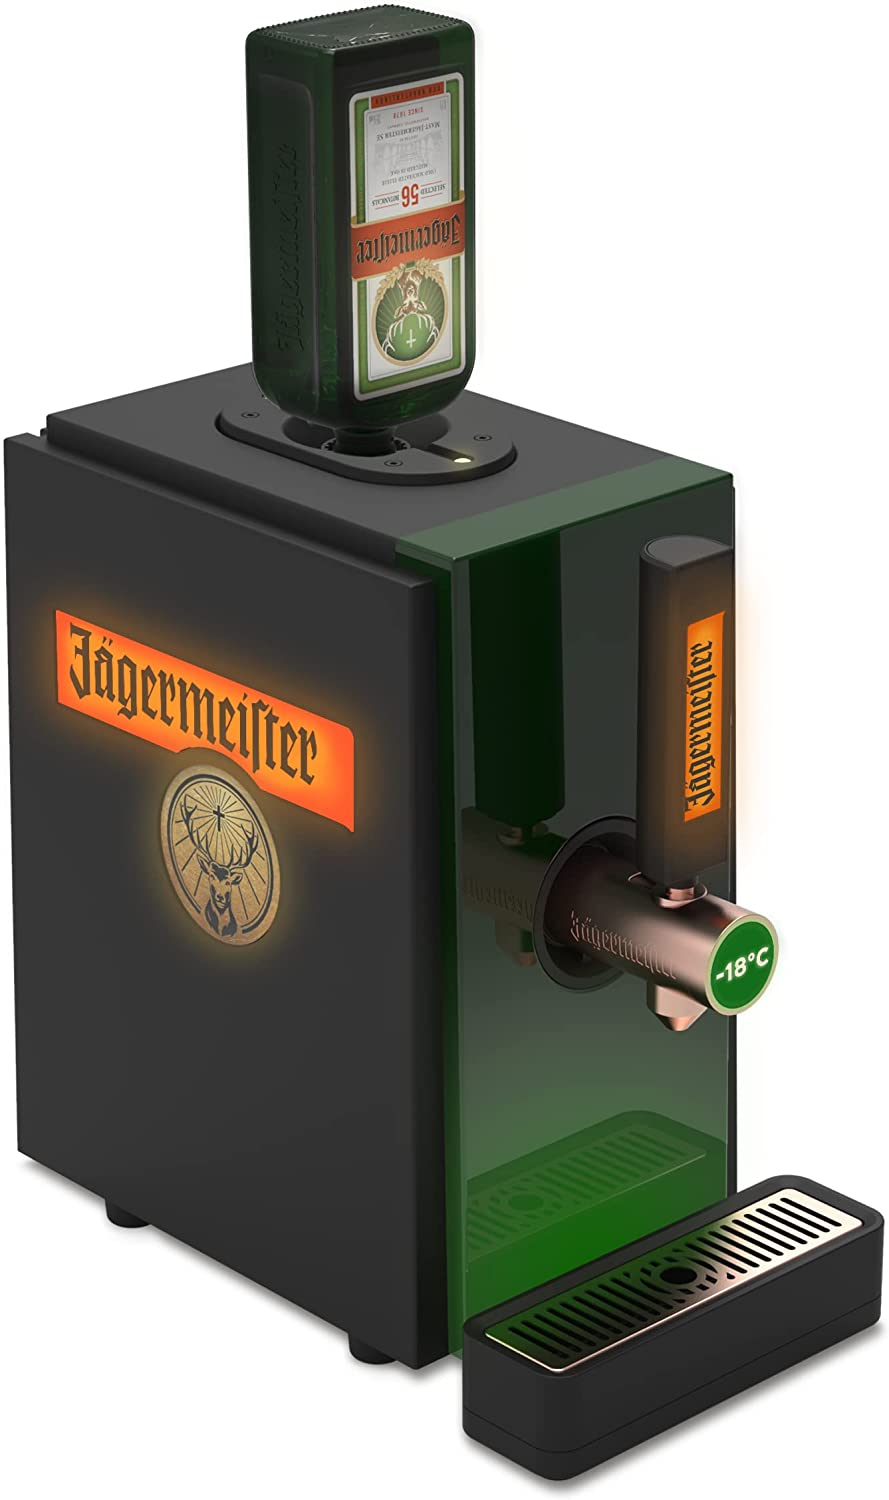 Jägermeister Shot Machine 2.0 - Cone Jägermeister at -18°C - Serve Masterful Shots - For Different Bottle Sizes - 22.0 x 39.5 x 40.7 cm, Black